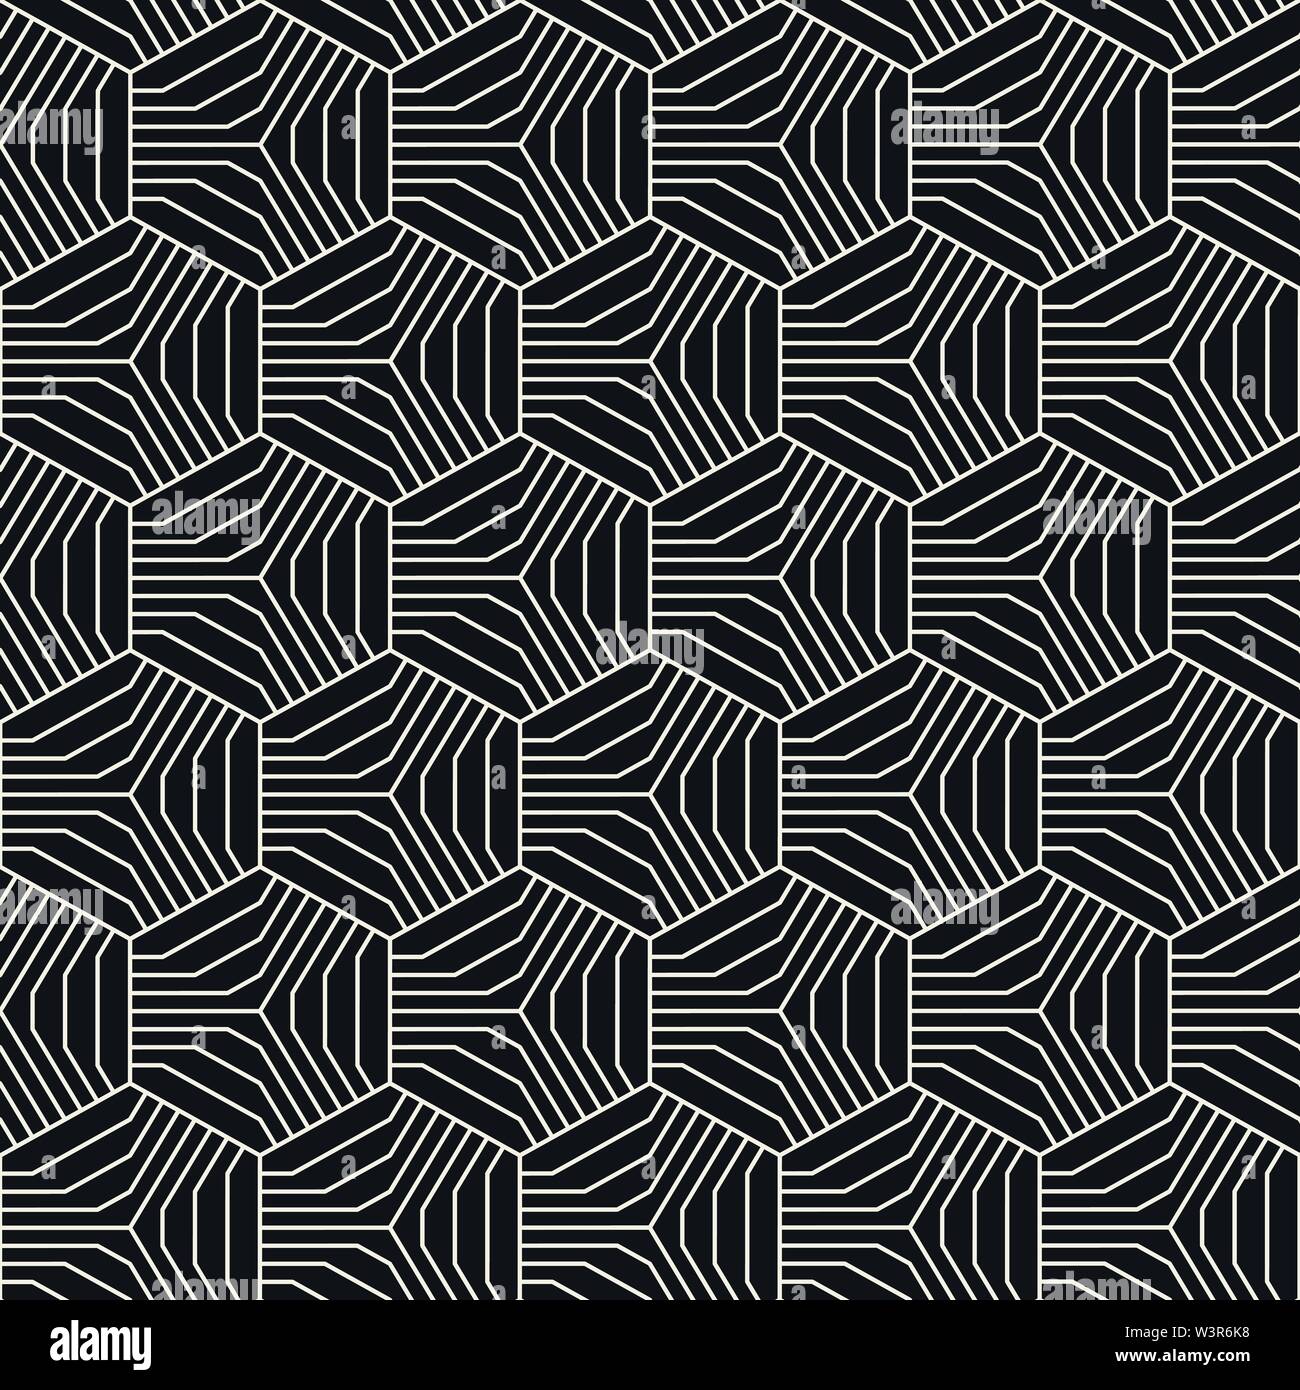 Abstract disegno geometrico con esagoni e strisce. Vector seamless linee sottili dello sfondo. Bianco e nero texture di reticolo. Illustrazione Vettoriale